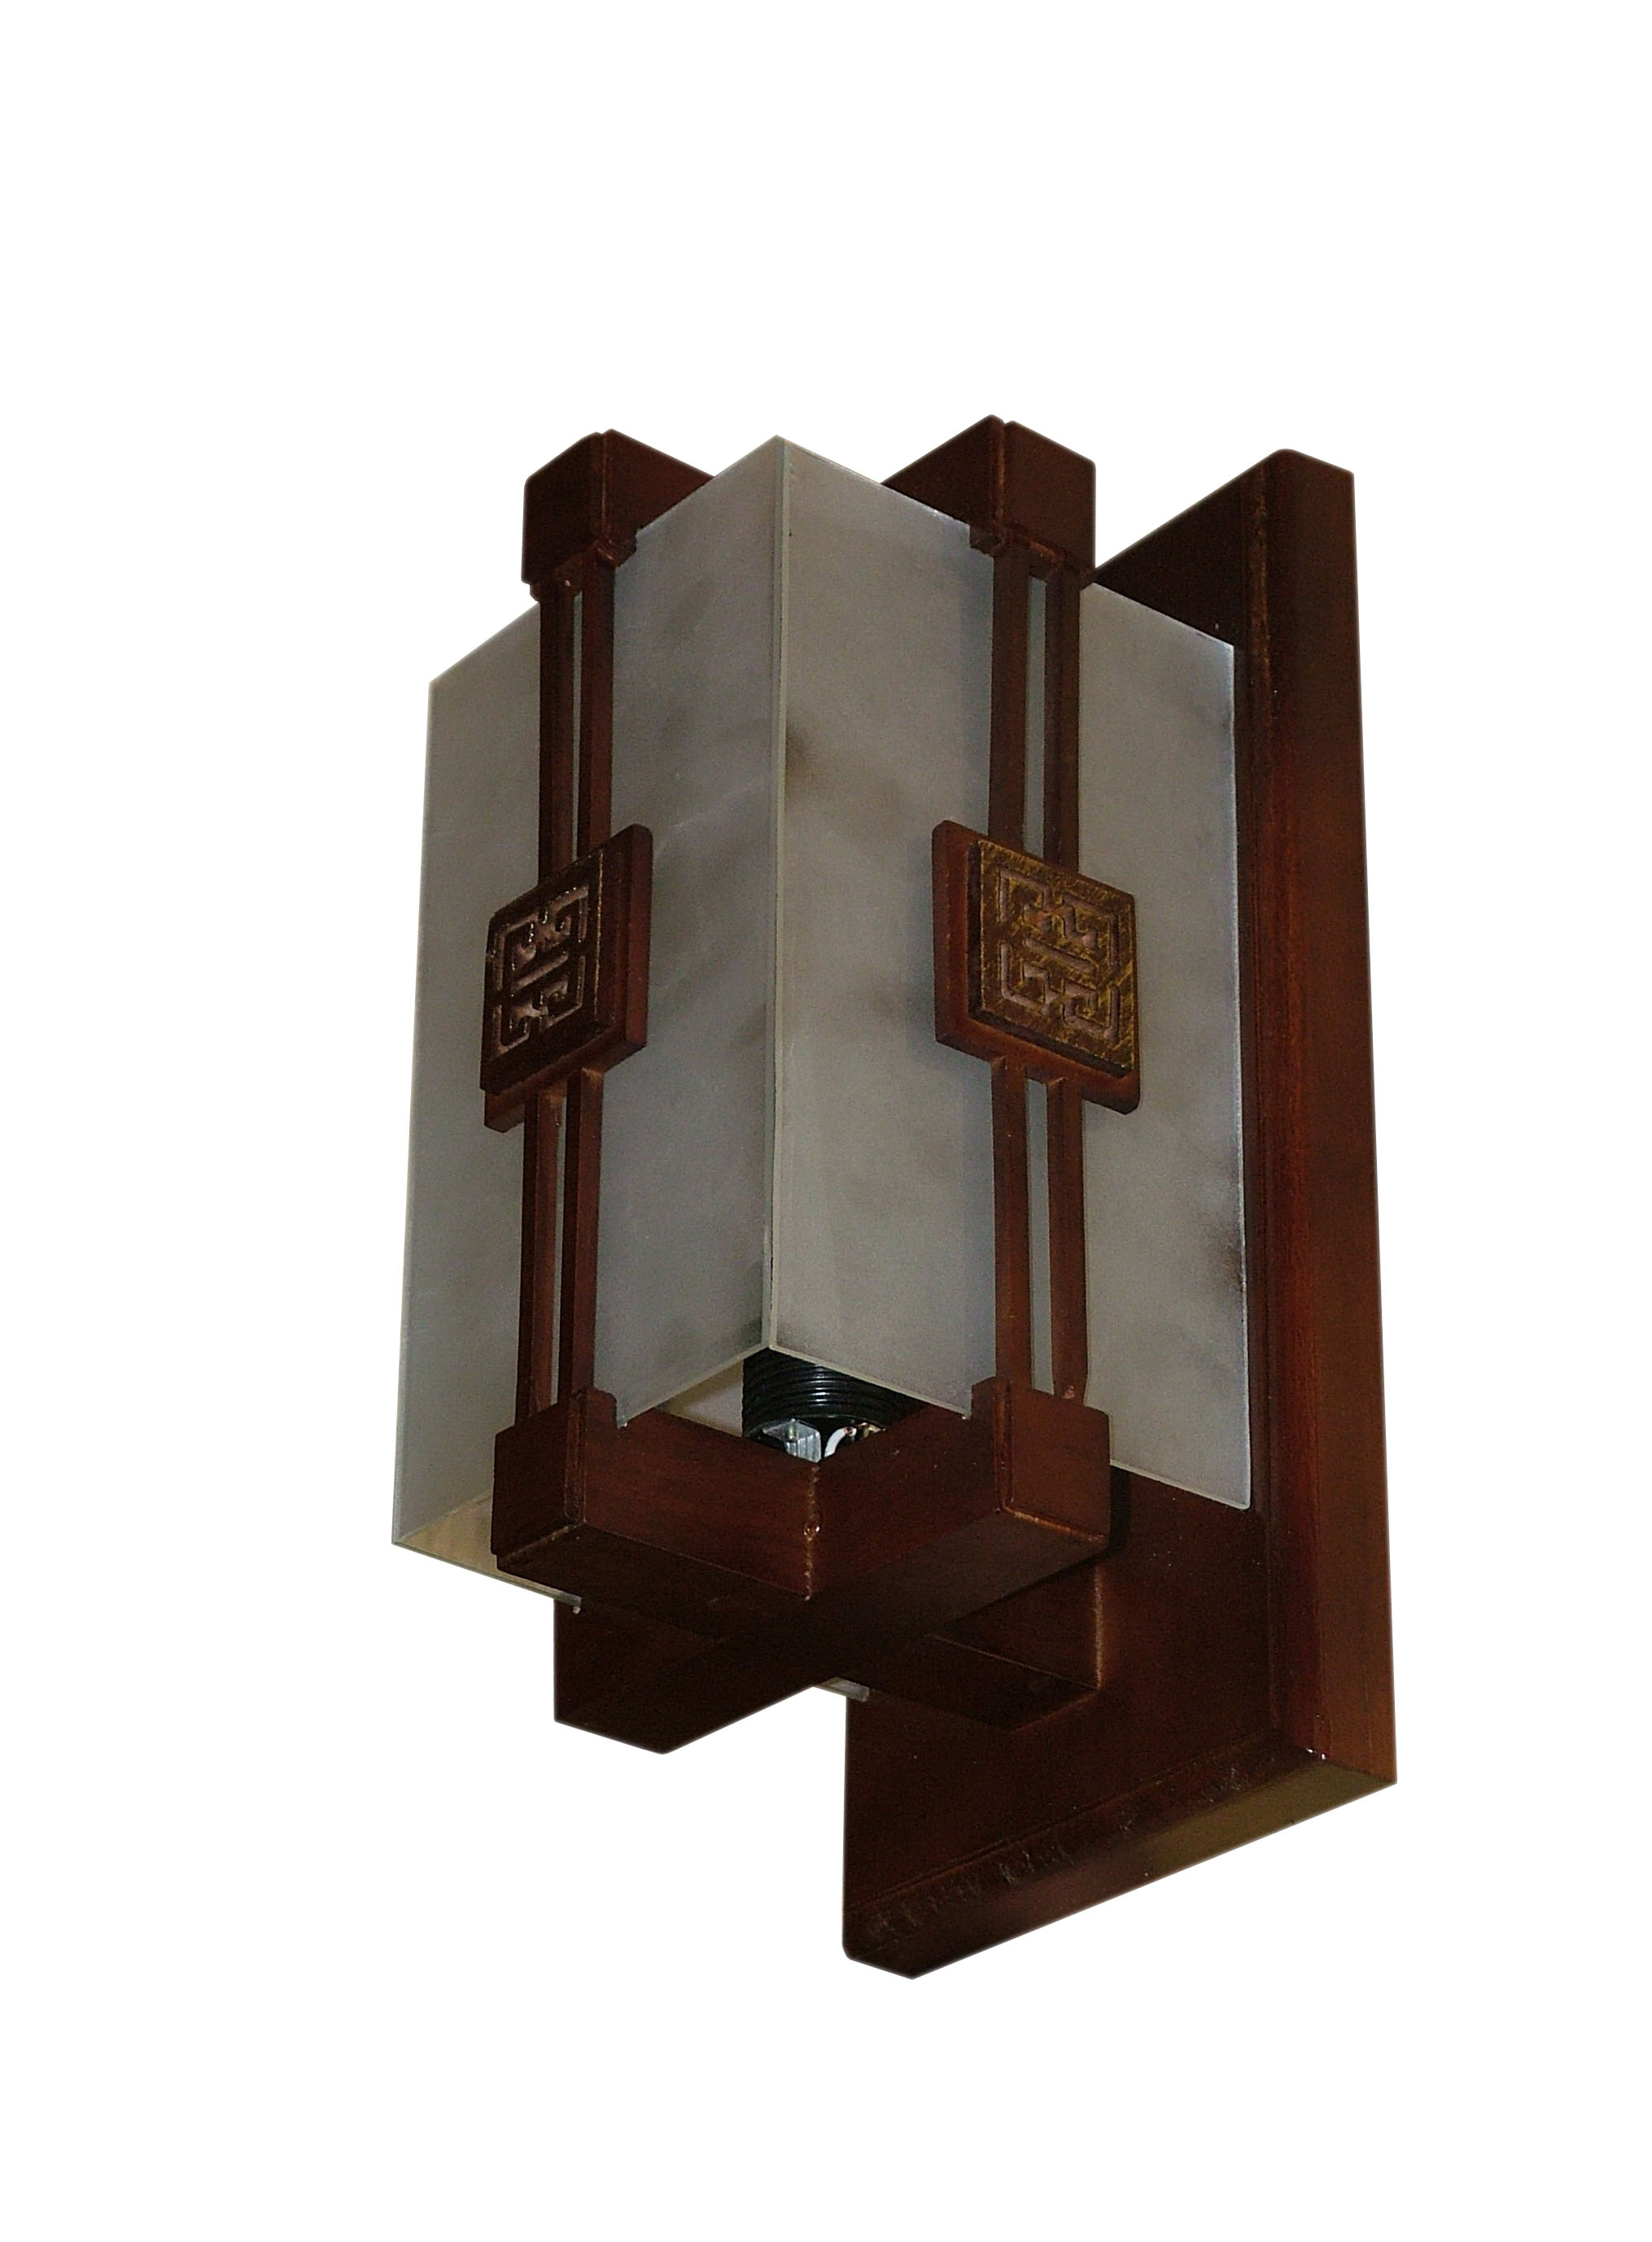 Làm sao chọn vị trí cho đèn ốp tường một cách hợp lý cho ngôi nhà bạn?